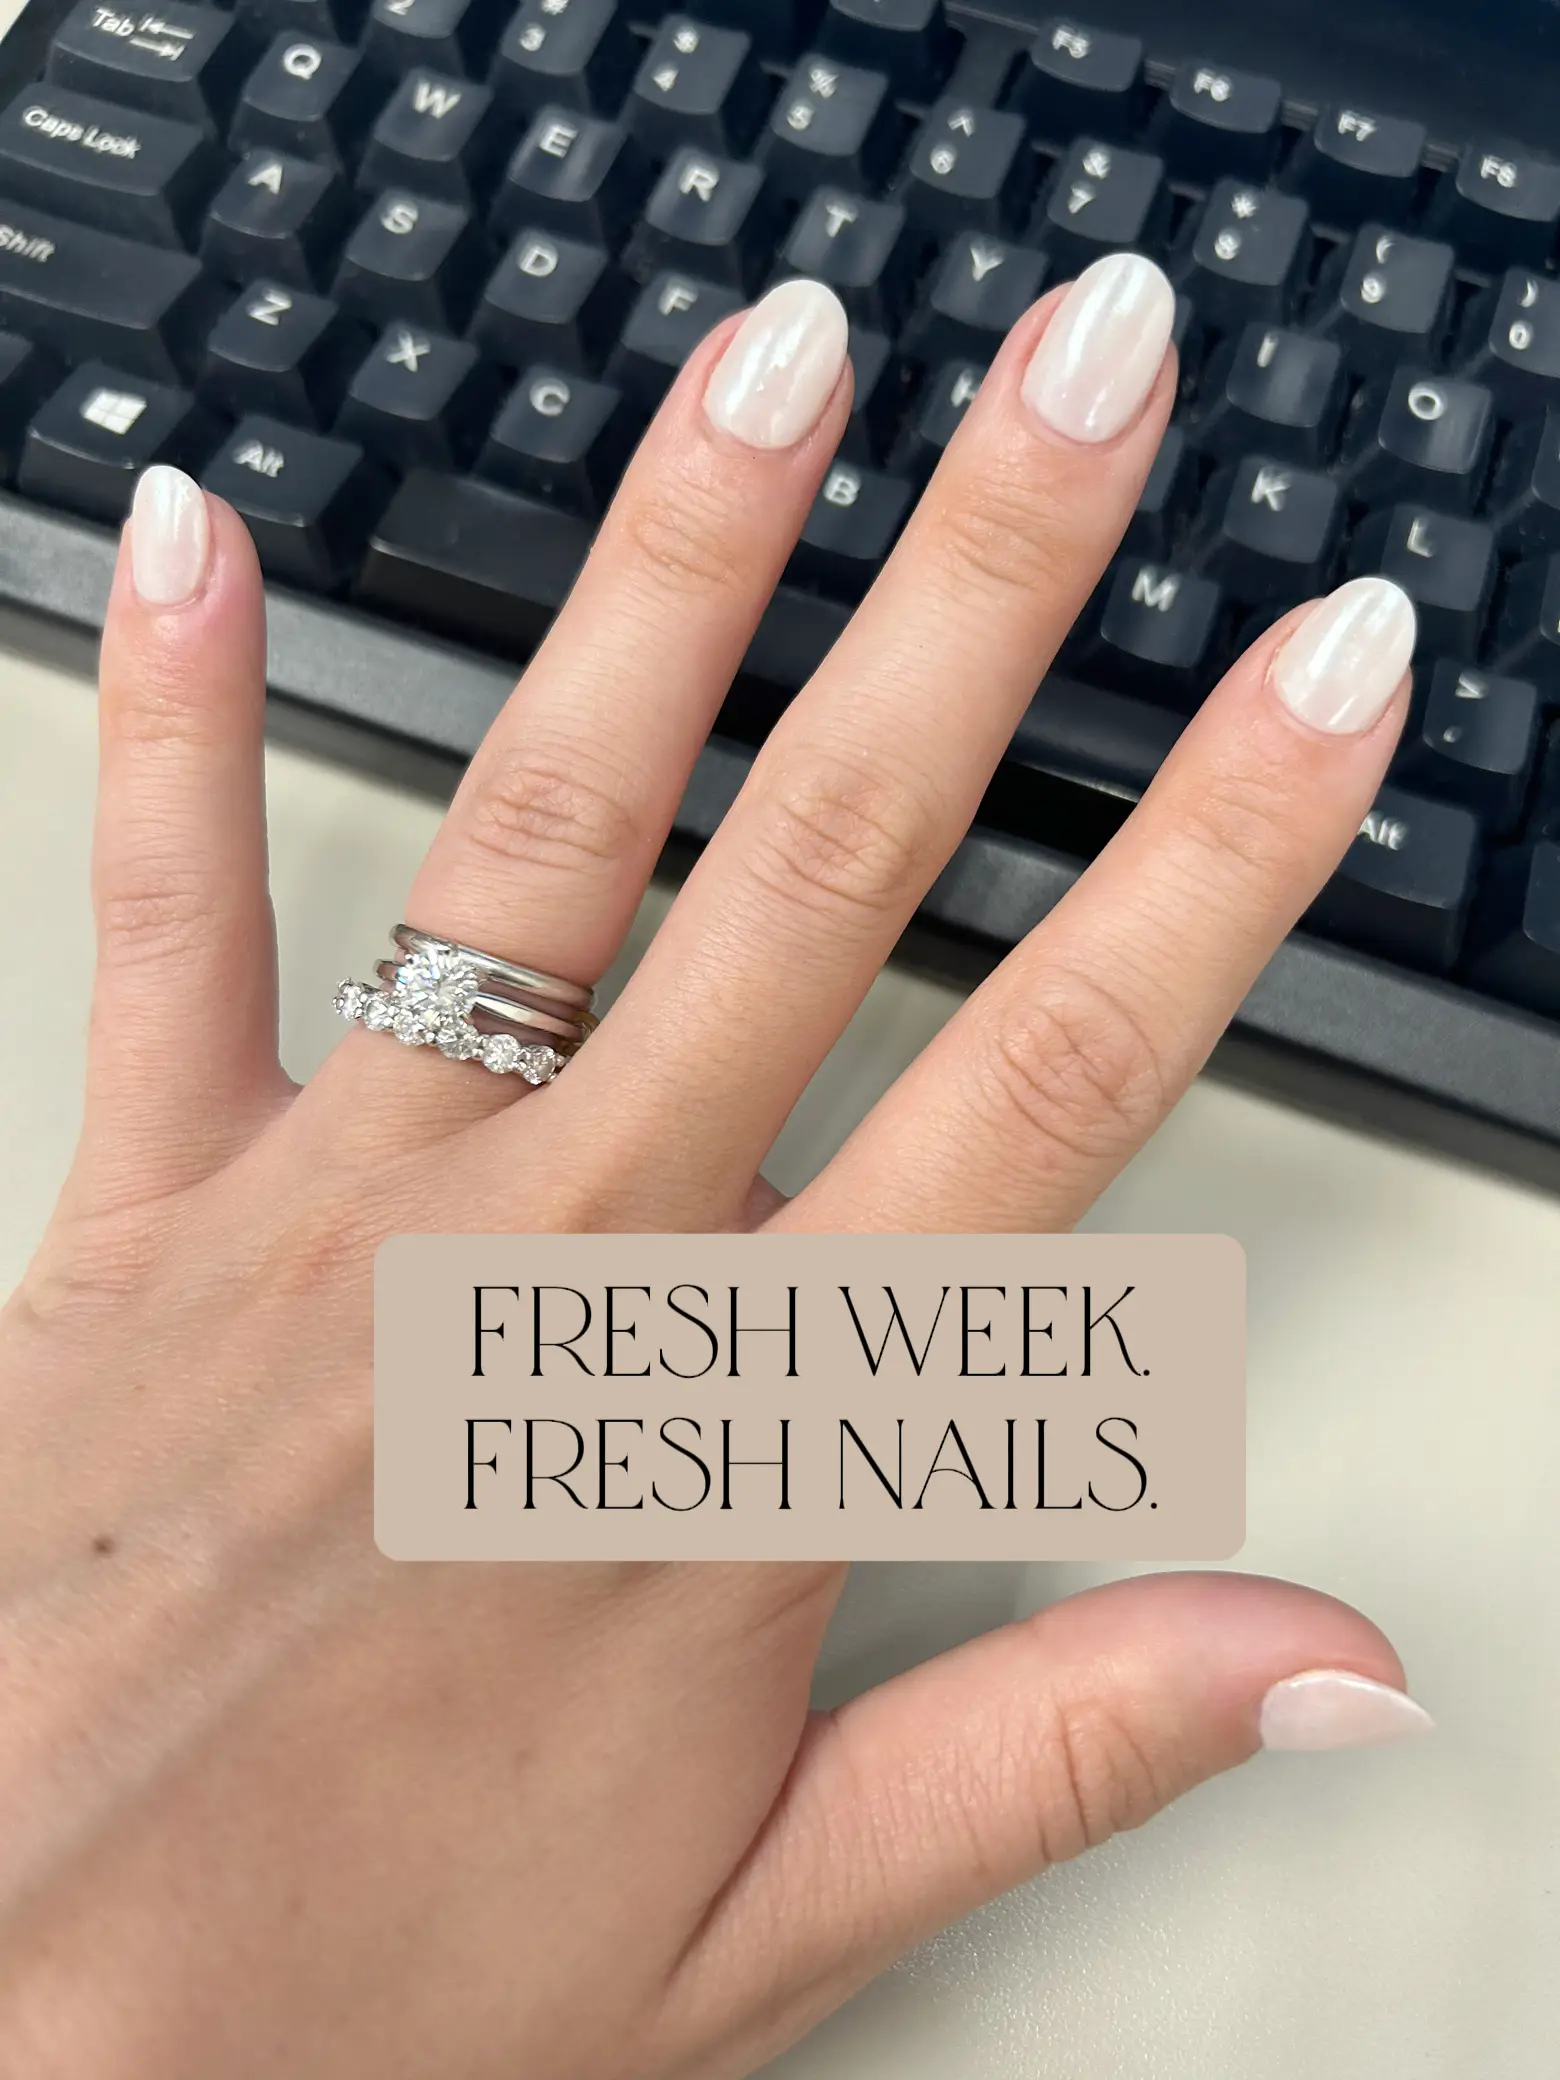 Fresh nails! : r/Nails